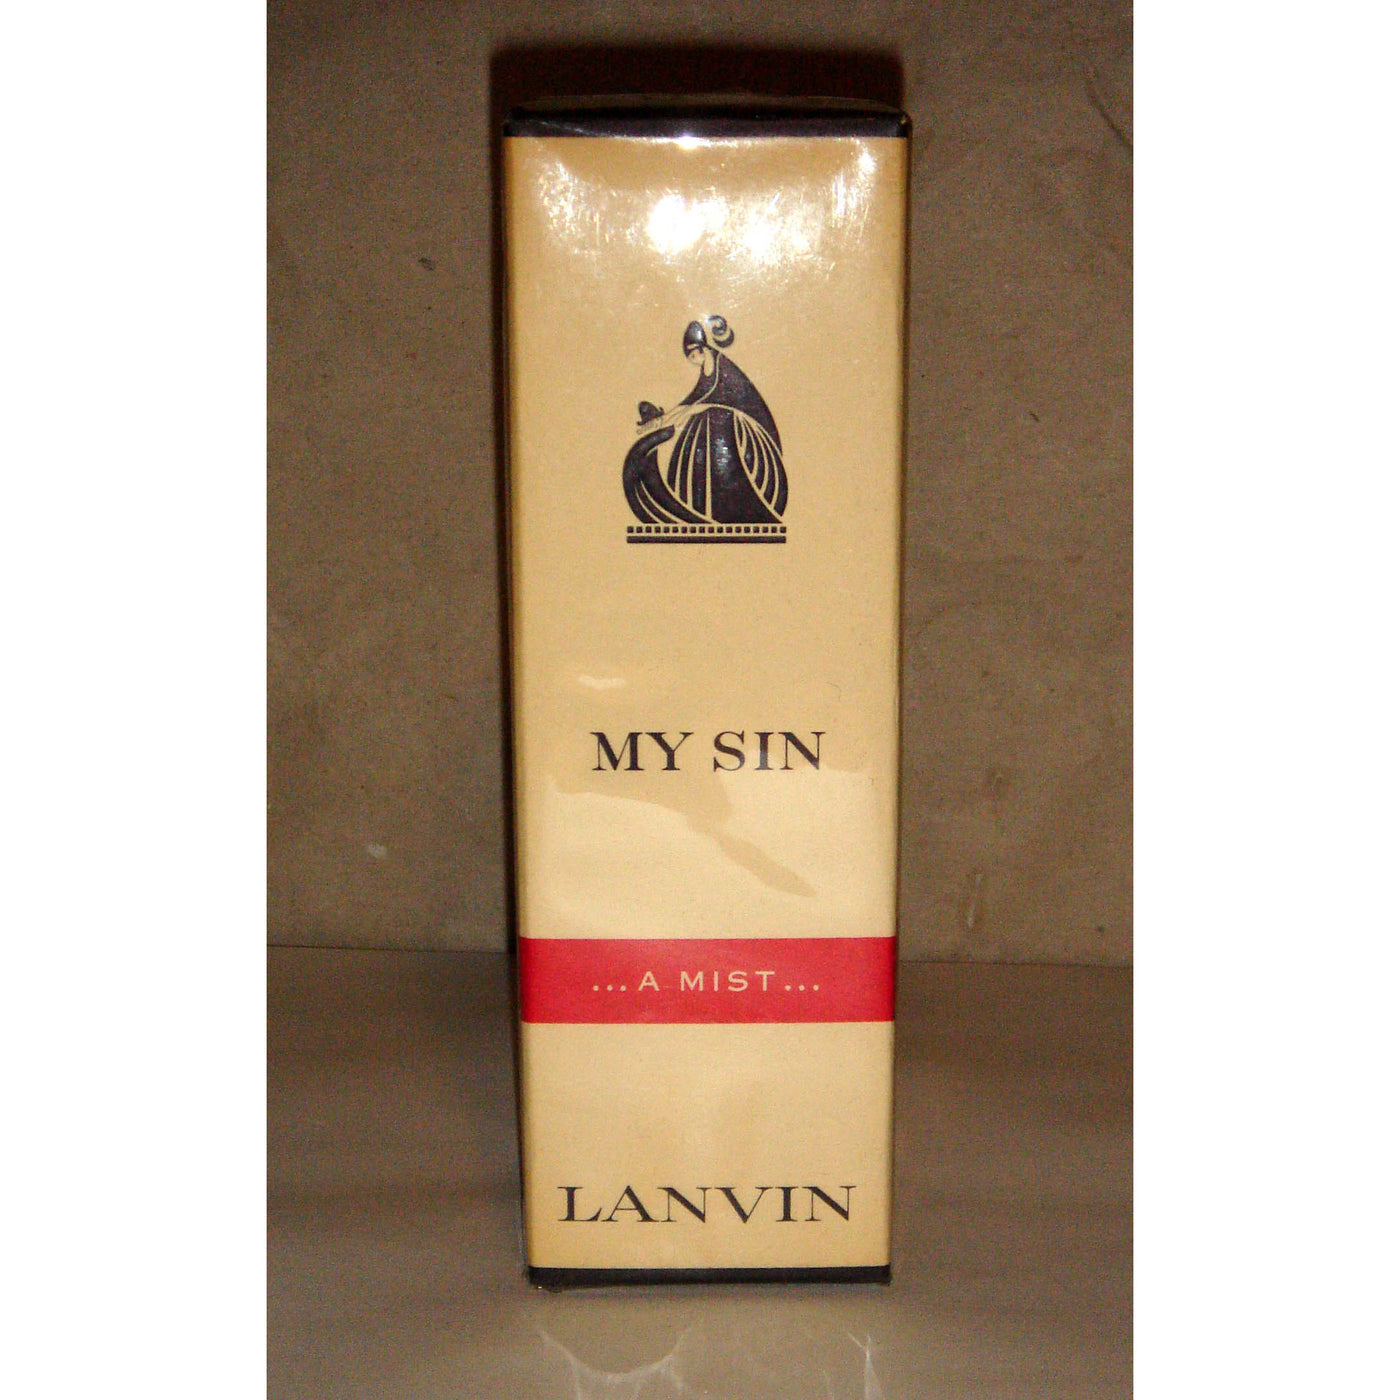 Vintage Lanvin My Sin "A Mist" Pefume